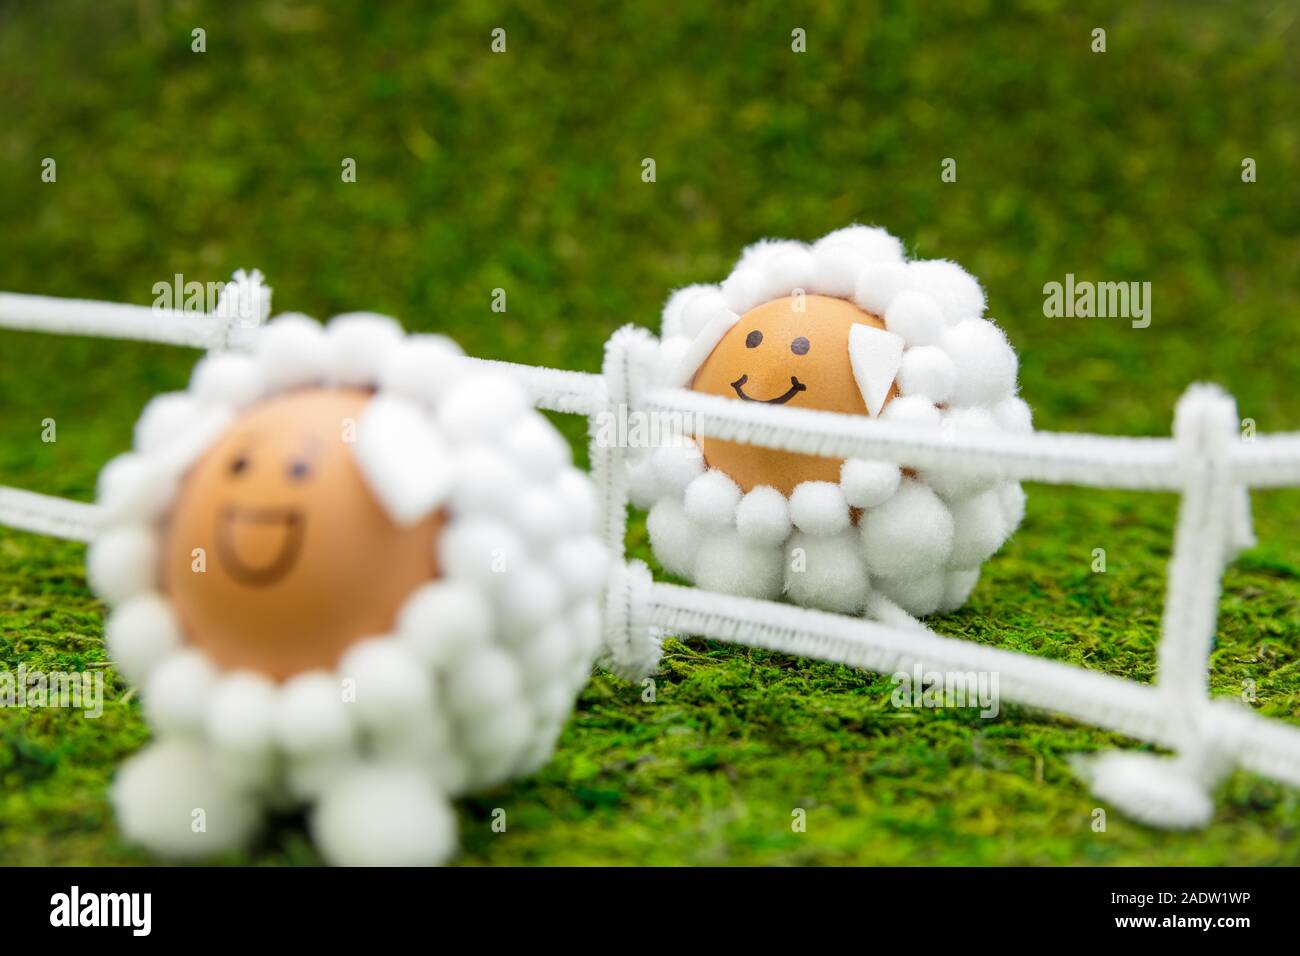 Molla di divertenti o scenario di pasqua sul prato verde, due figure di agnello uova su una recinzione Foto Stock